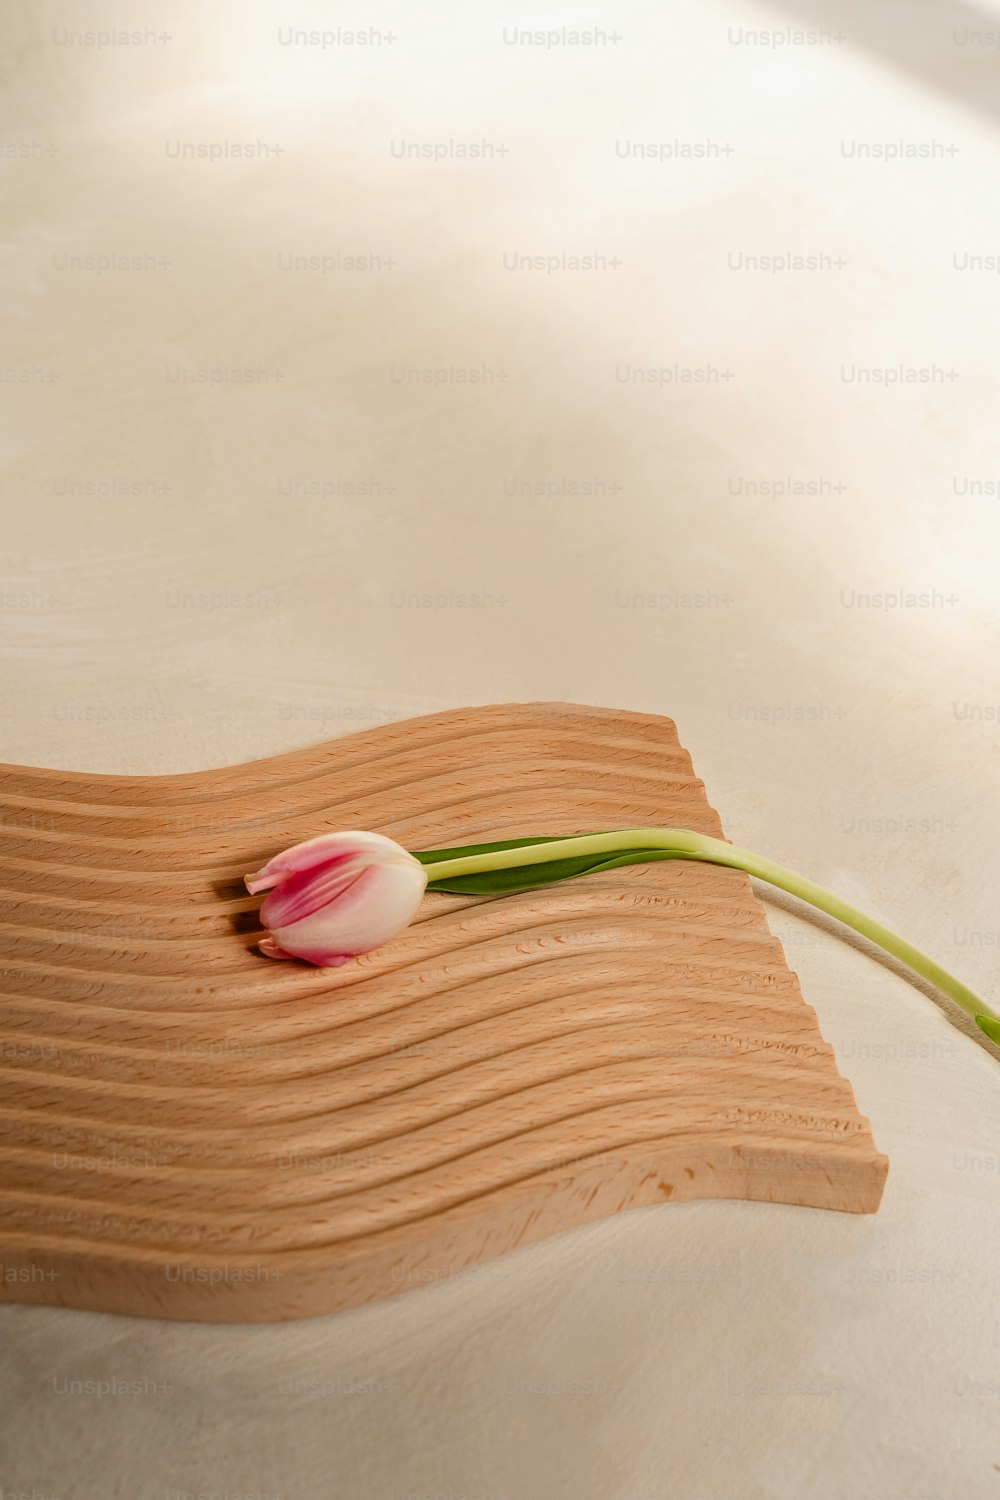 un singolo tulipano su un tagliere di legno